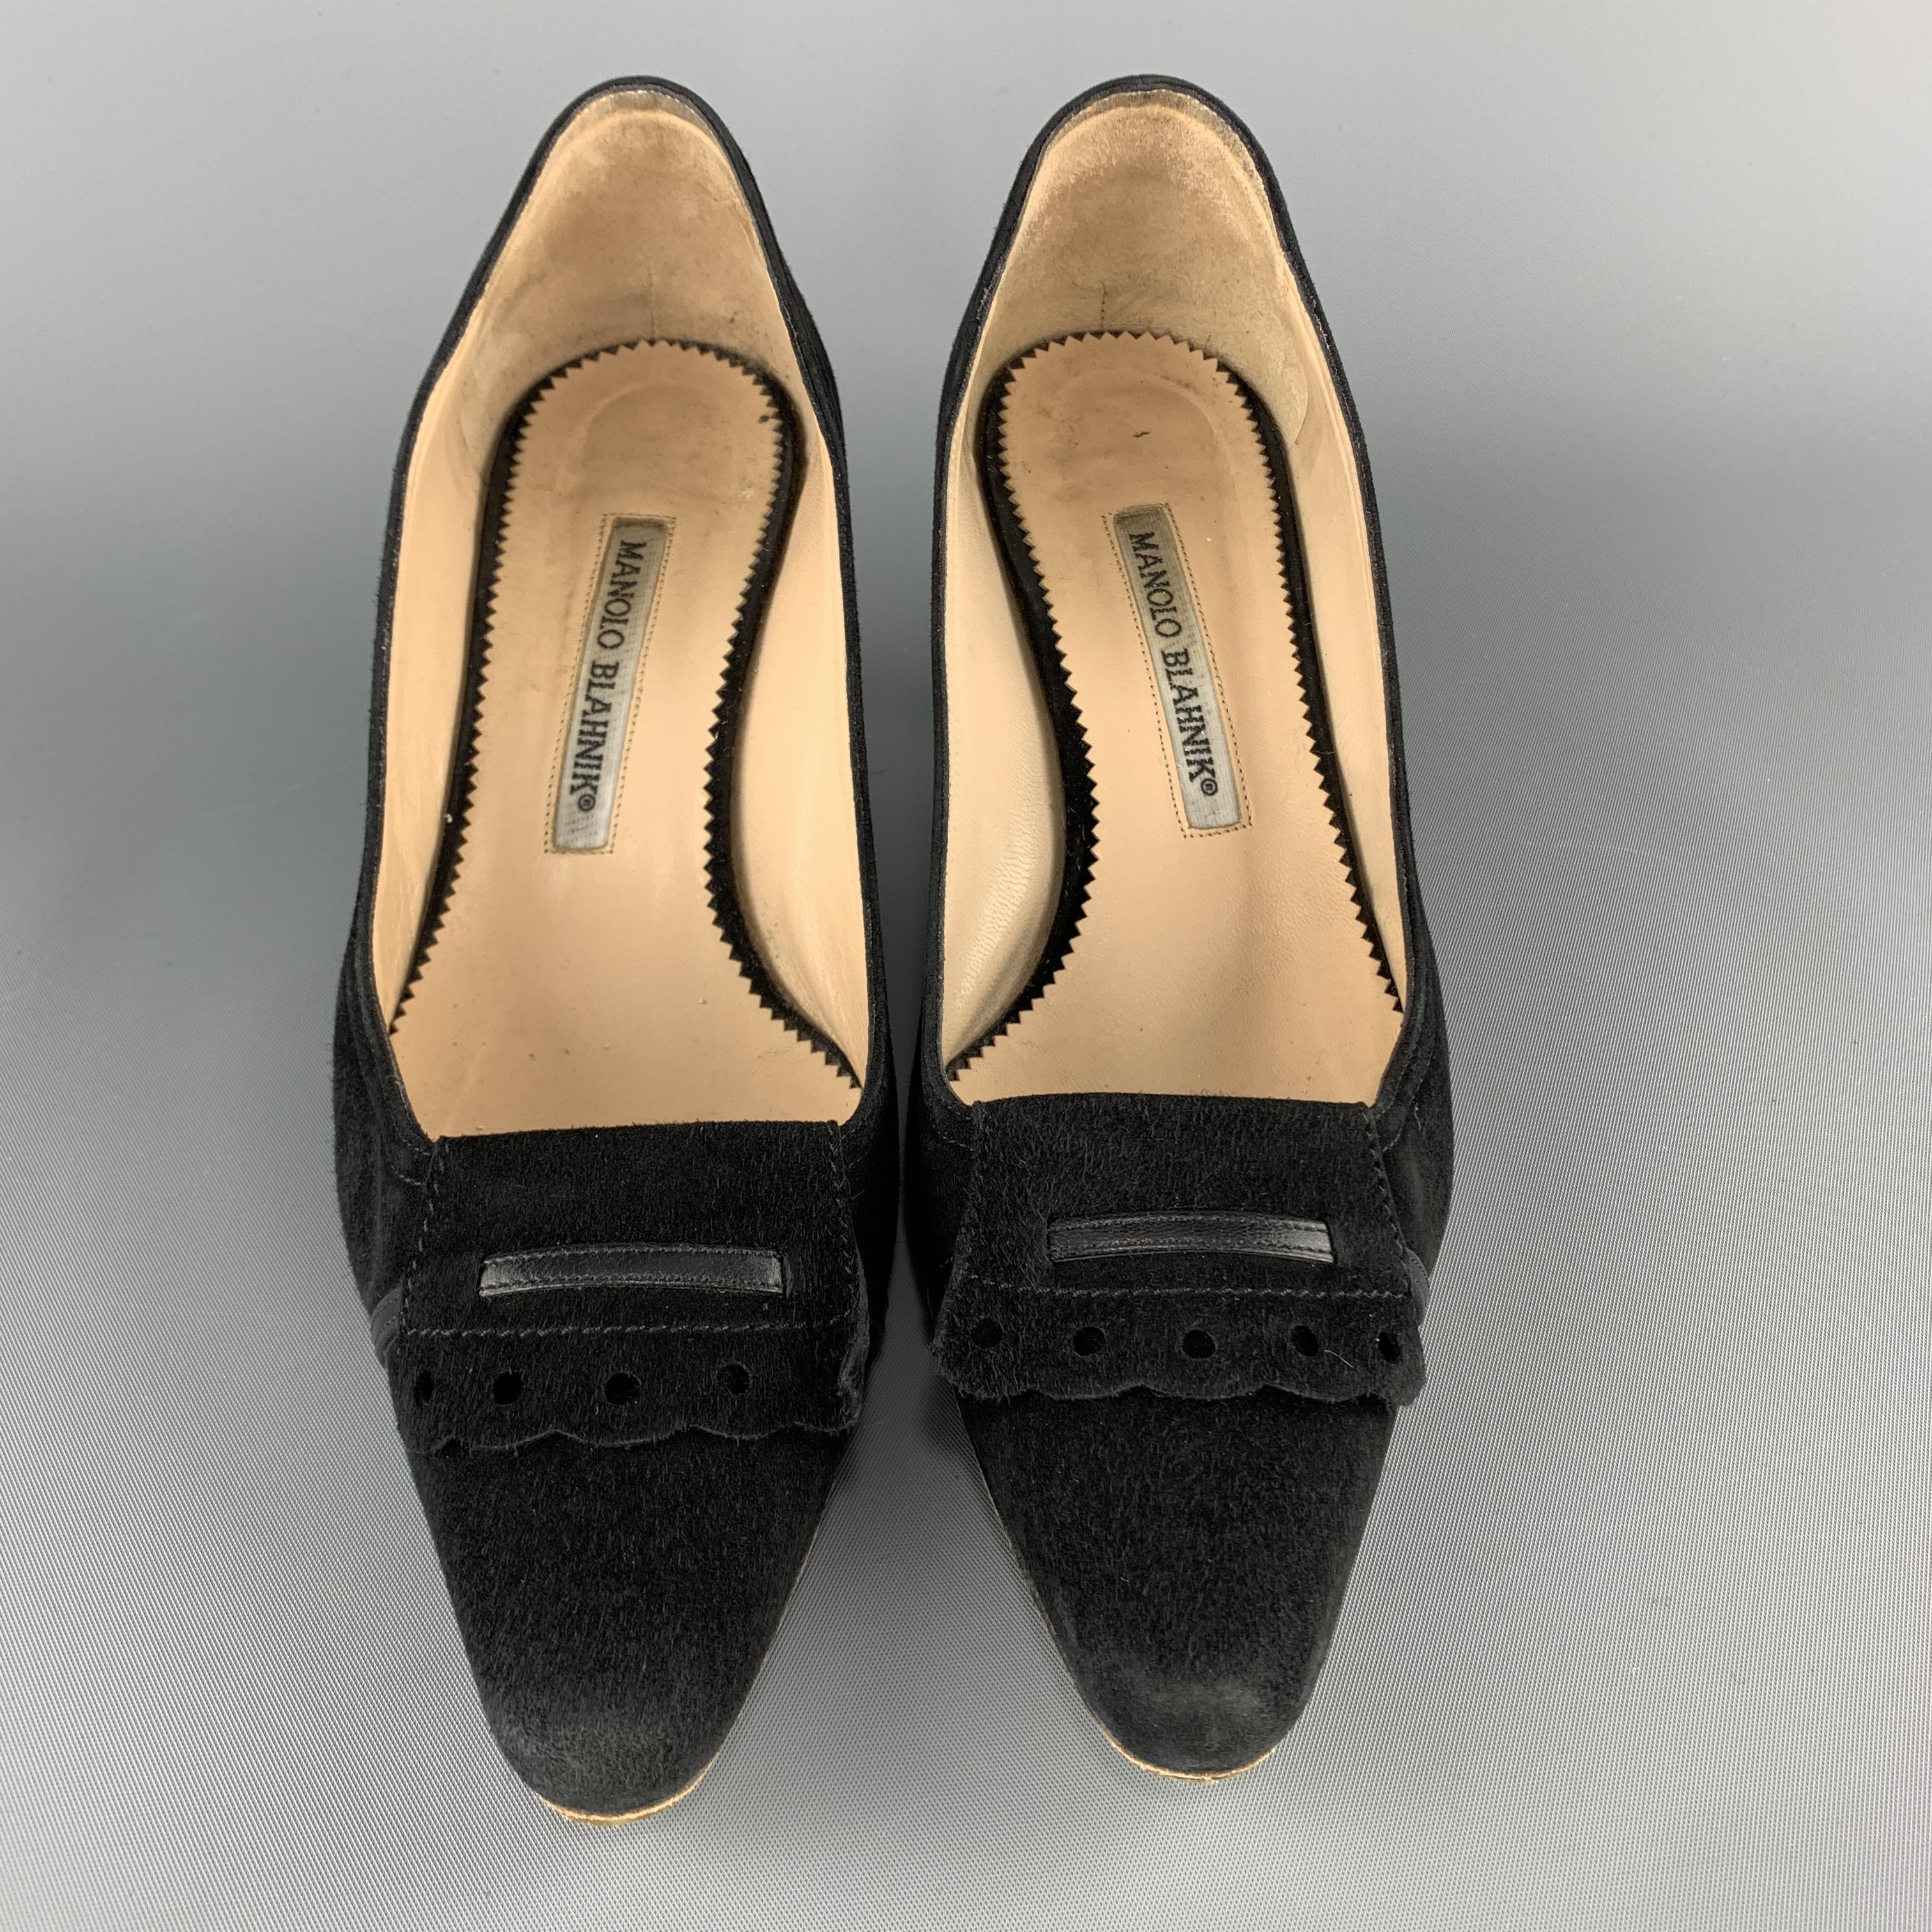 Women's MANOLO BLAHNIK Size 7 Black Suede Ruffle Toe Pointed Pumps